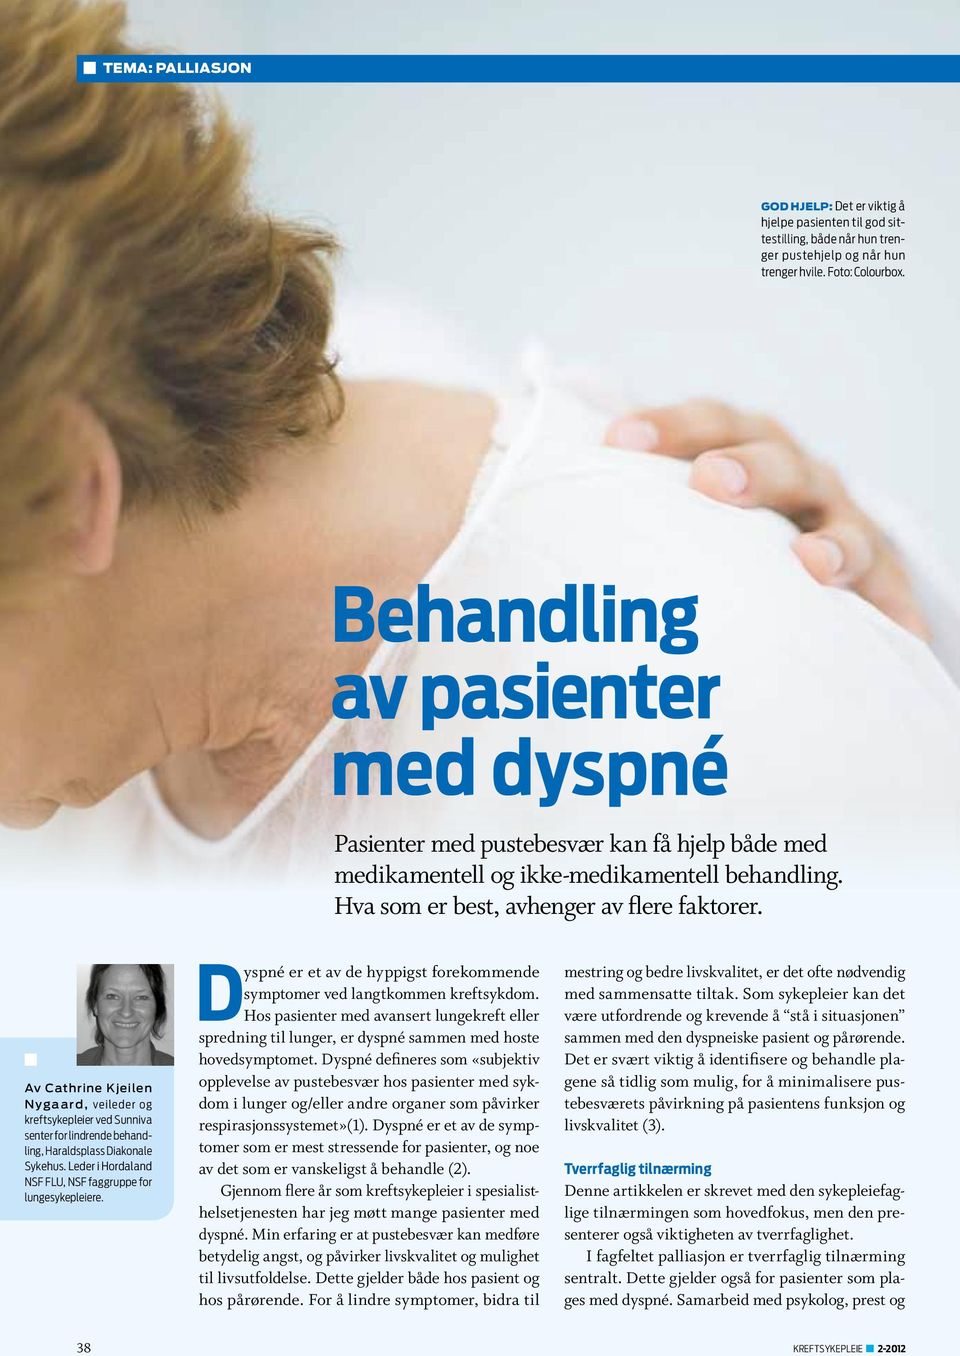 Av Cathrine Kjeilen Nygaard, veileder og kreftsykepleier ved Sunniva senter for lindrende behandling, Haraldsplass Diakonale Sykehus. Leder i Hordaland NSF FLU, NSF faggruppe for lungesykepleiere.